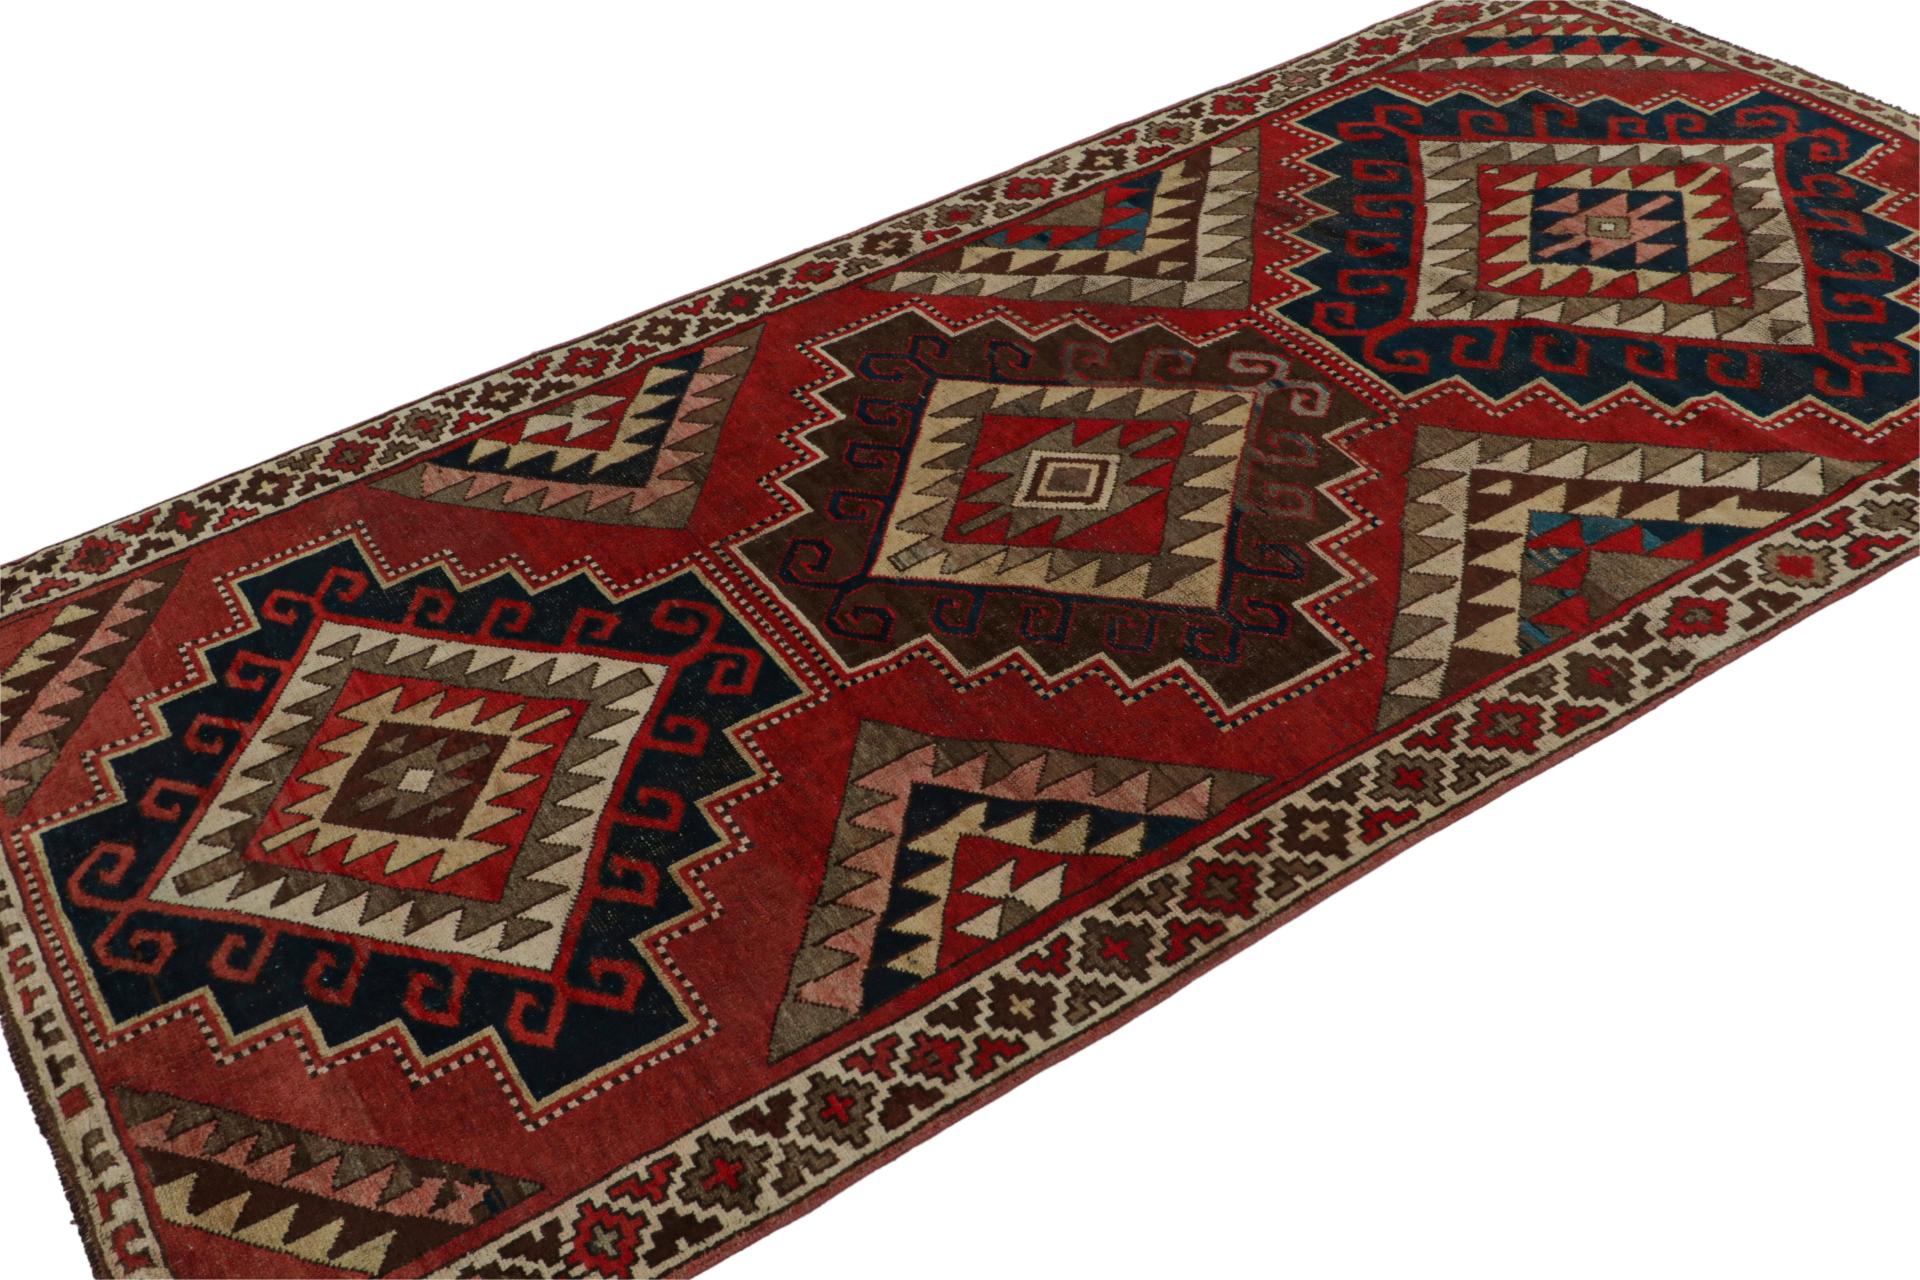 Dieser handgeknüpfte türkische Teppich im Format 5x8 aus Wolle (ca. 1970) zeigt traditionelle Muster, die von aserbaidschanischen Stammesteppichen und ähnlichen Provenienzen inspiriert sind. 

Über das Design: 

Dieser Entwurf zeigt ein